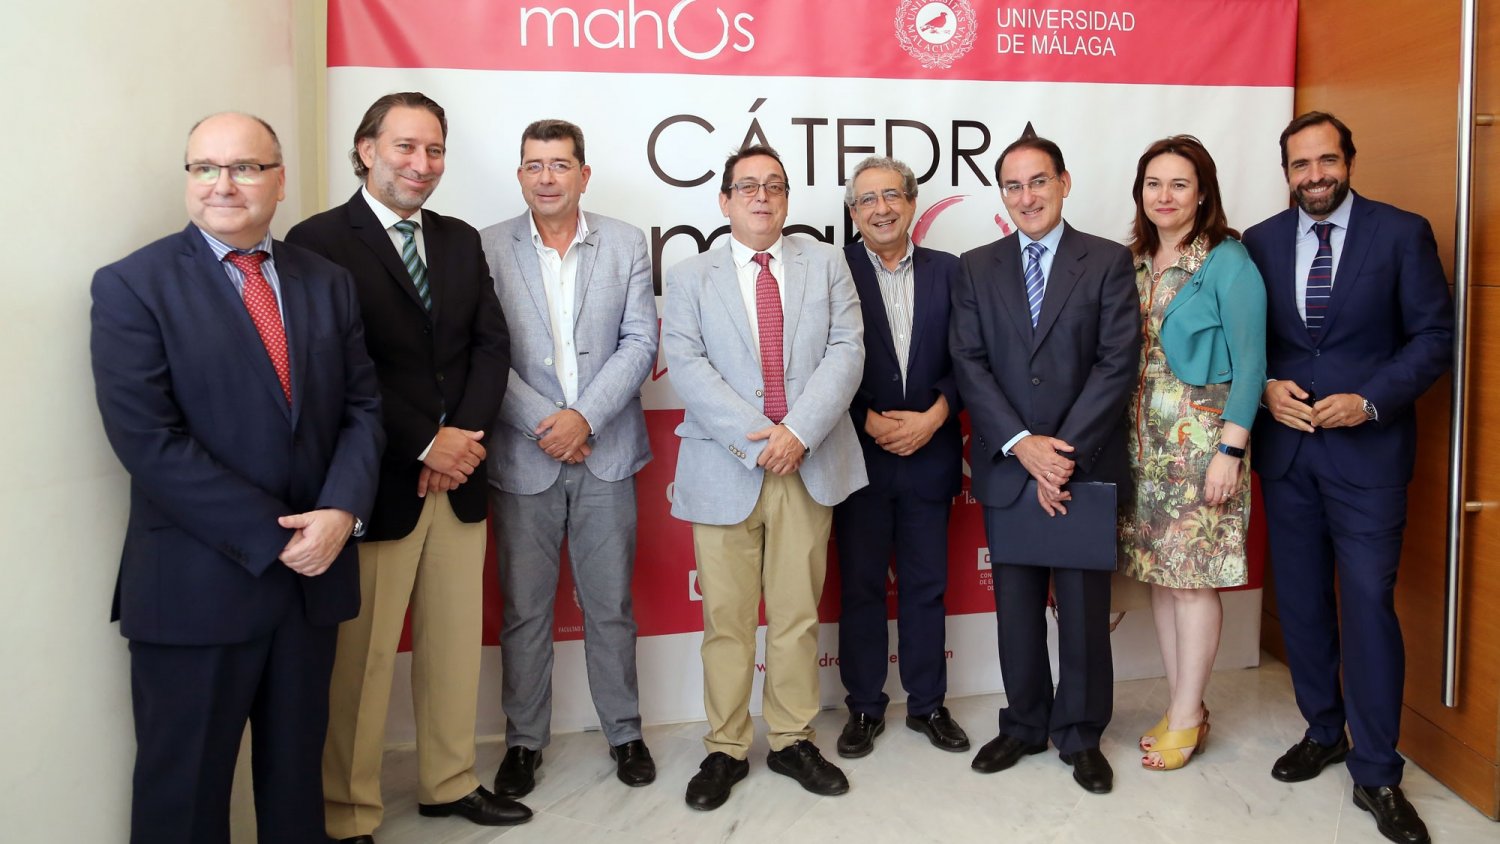 La UMA y la Asociación de Hosteleros de Málaga ponen en marcha la Cátedra Mahos